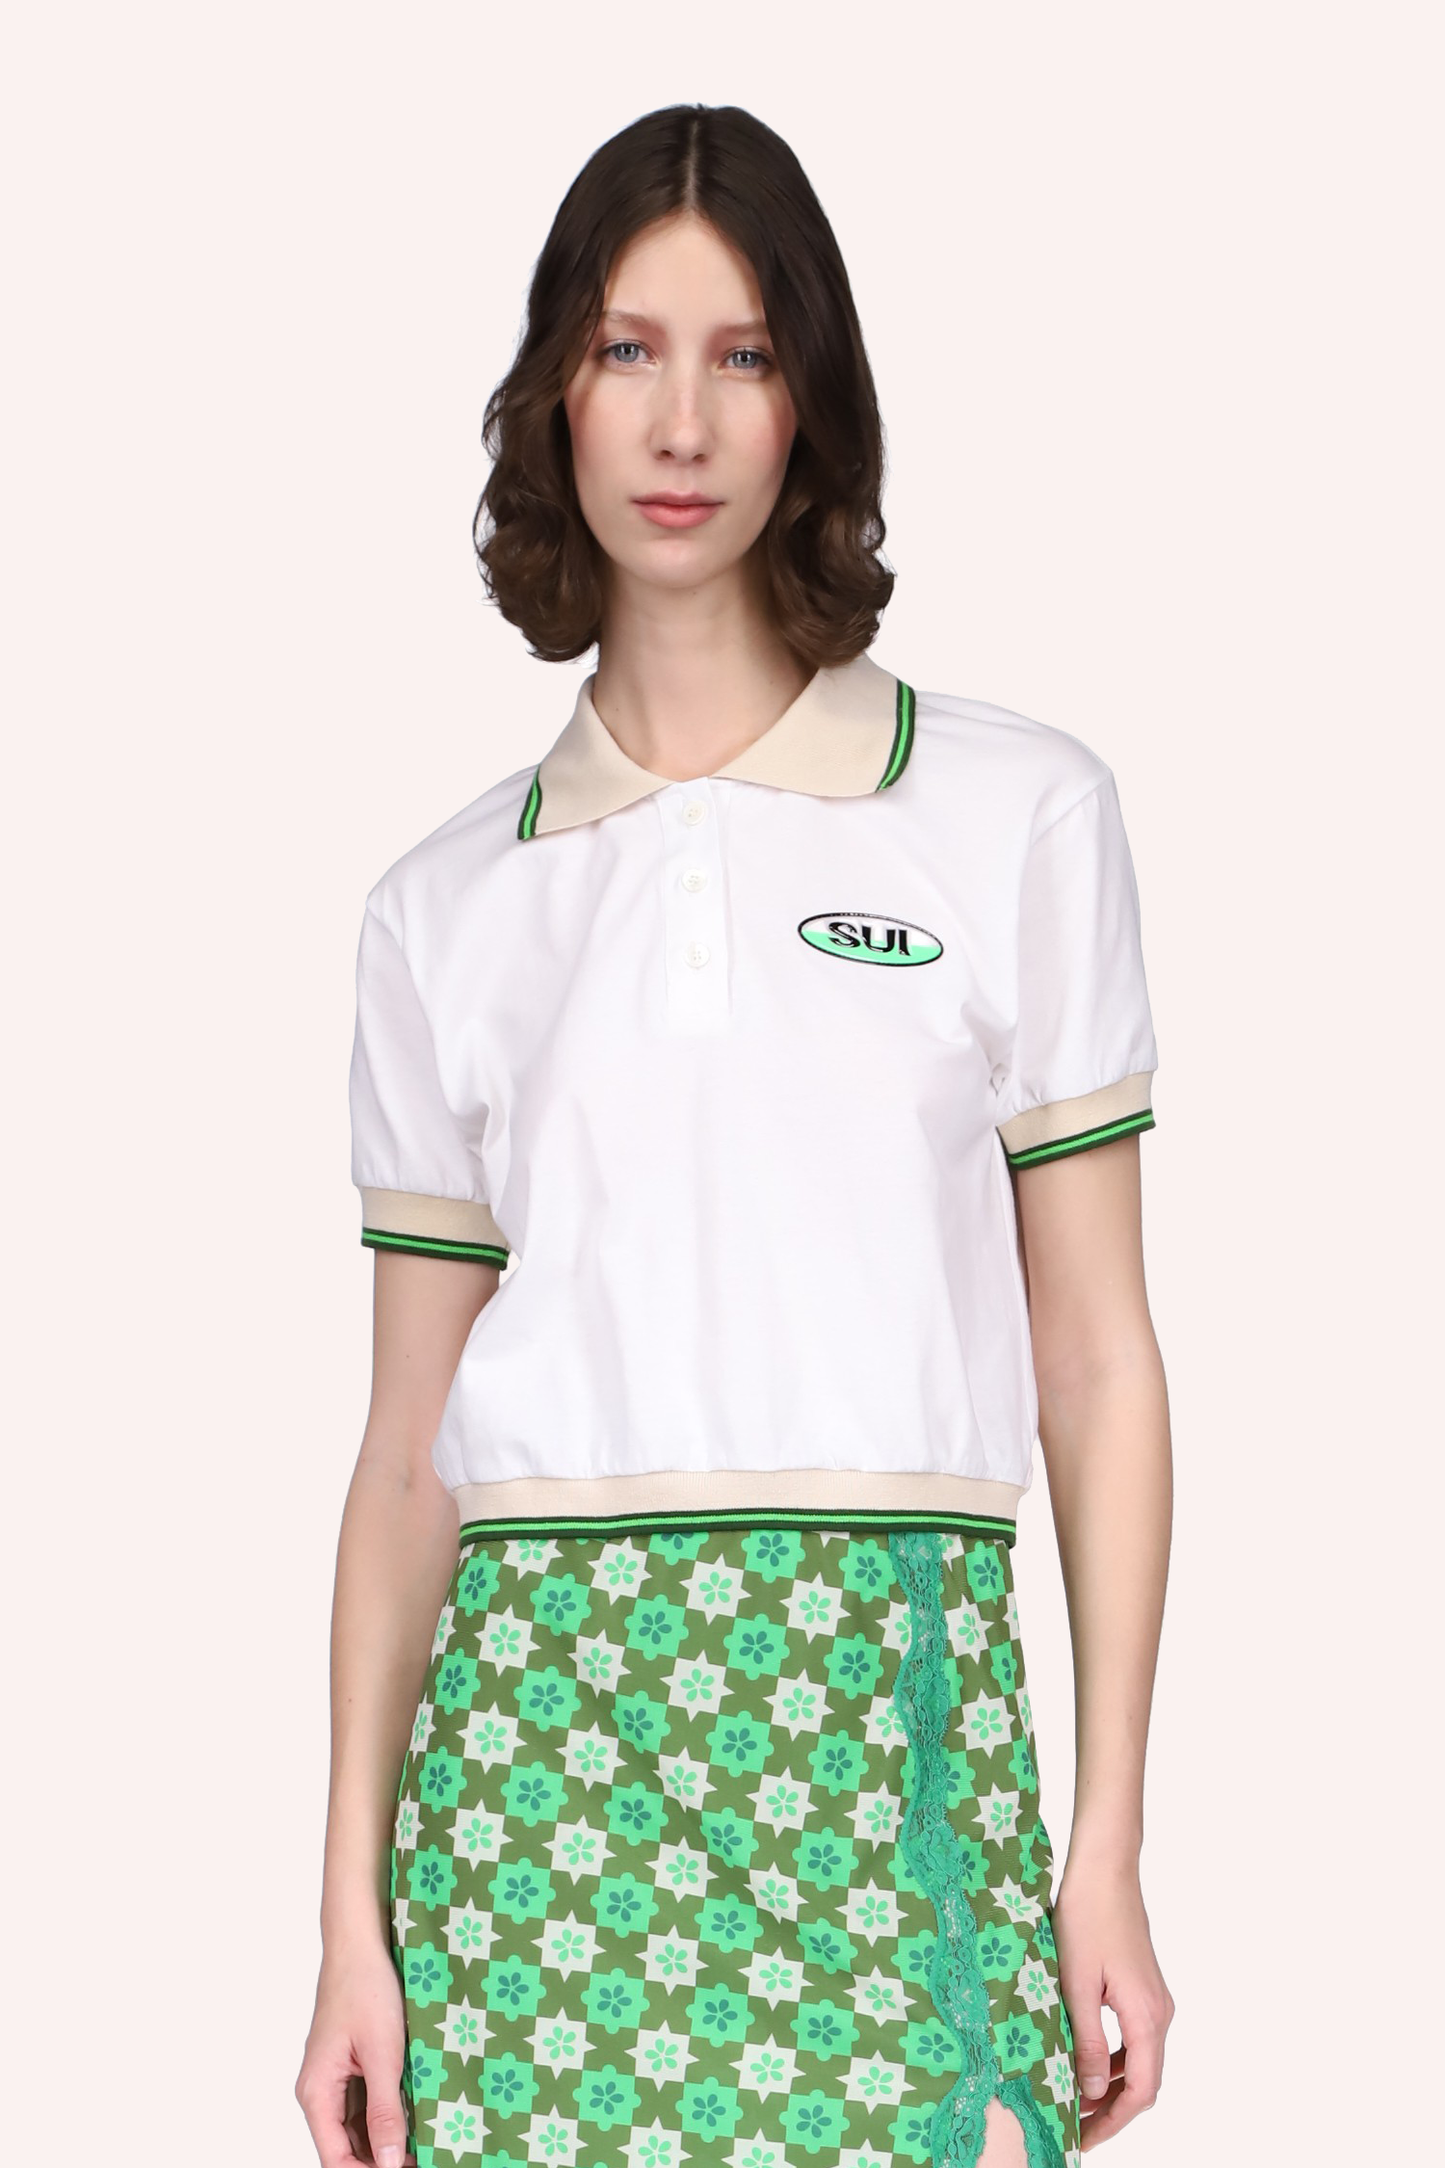 Deco Polo Tee Neon Green, camiseta blanca, costuras con líneas beige y verde, SUI una etiqueta a la izquierda